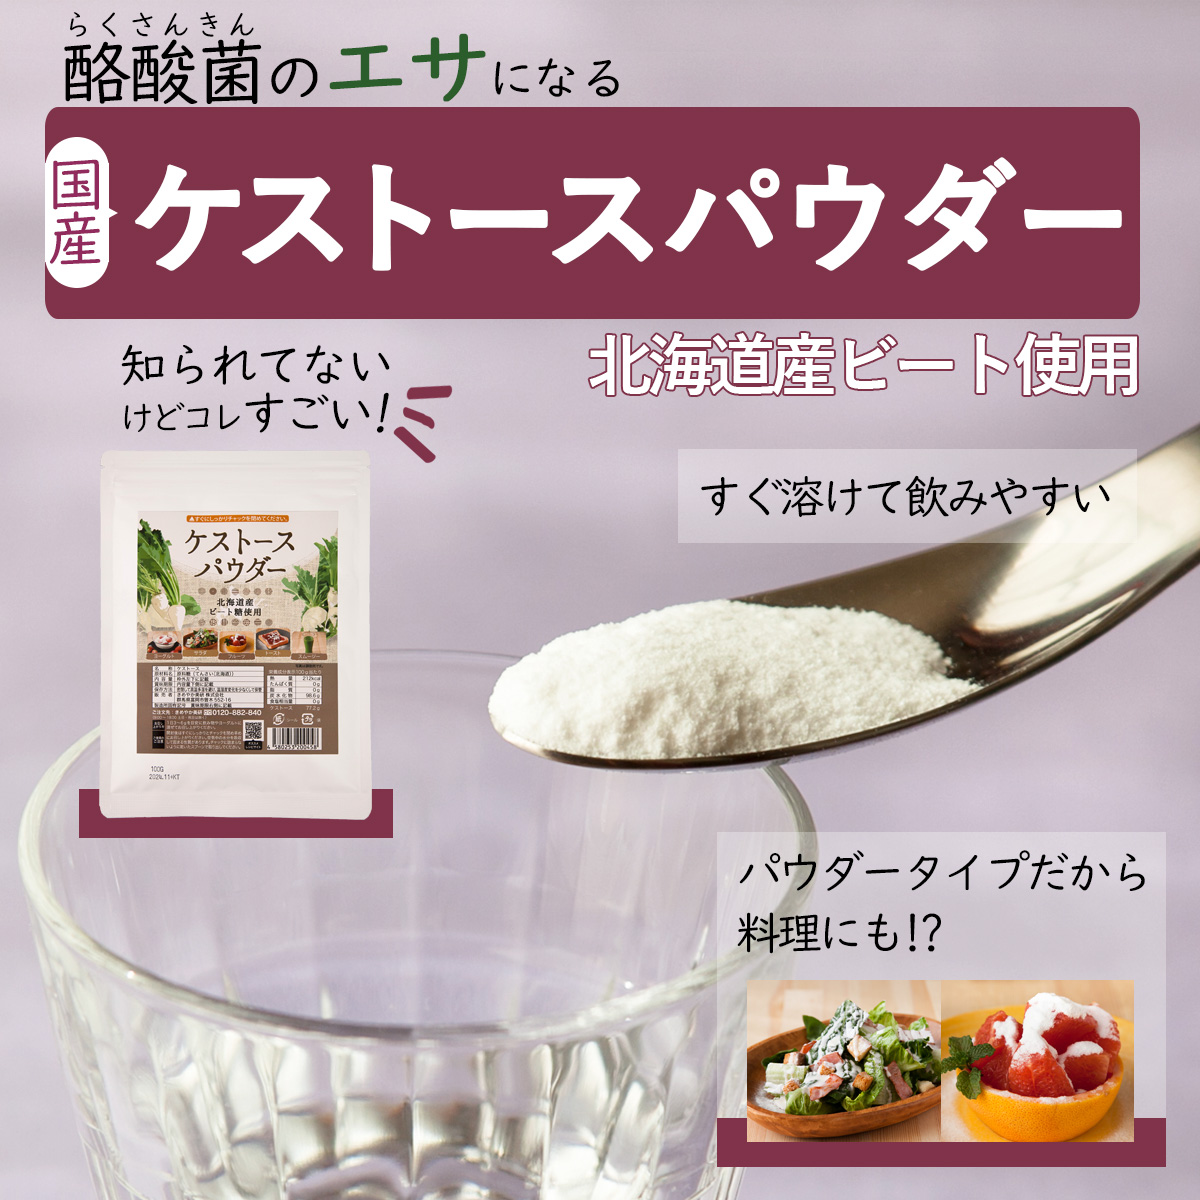 酪酸菌のエサになる国産ケストースパウダー知られてないけどコレすごい！北海道産ビート使用水以外でもすぐ溶けて飲みやすい。パウダータイプだから料理にも使える。